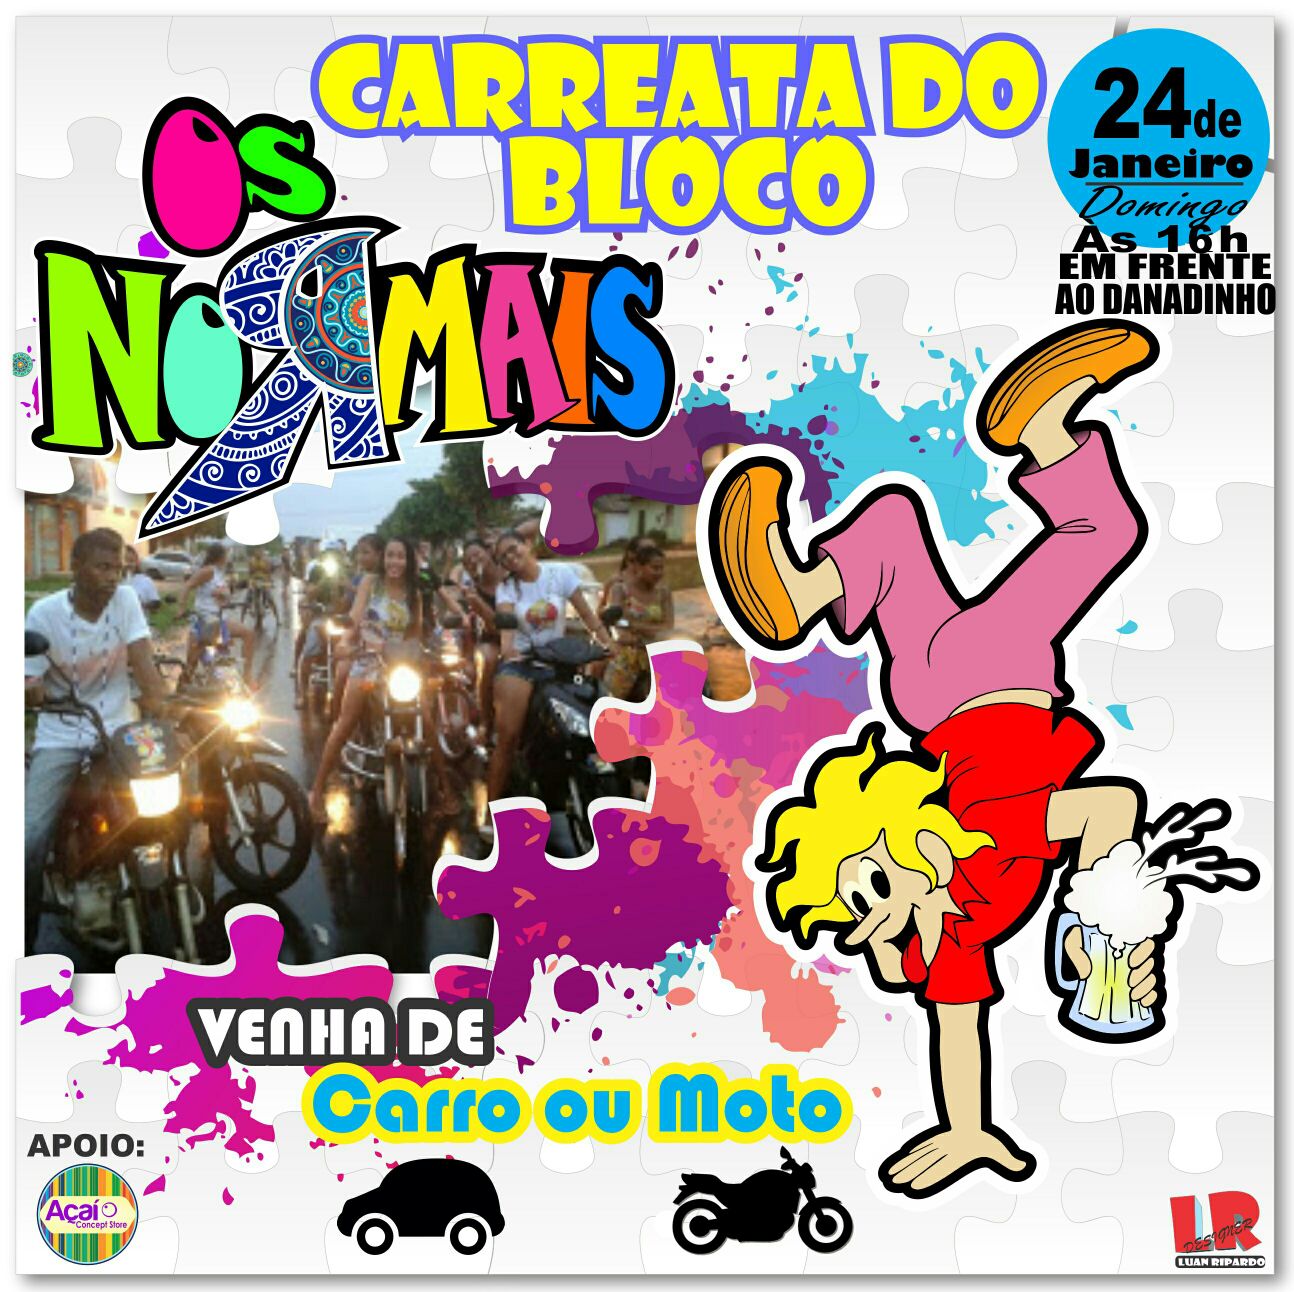 Carnaval 2016 – Carreata do bloco ‘Os Normais’ acontece neste domingo em Pindaré